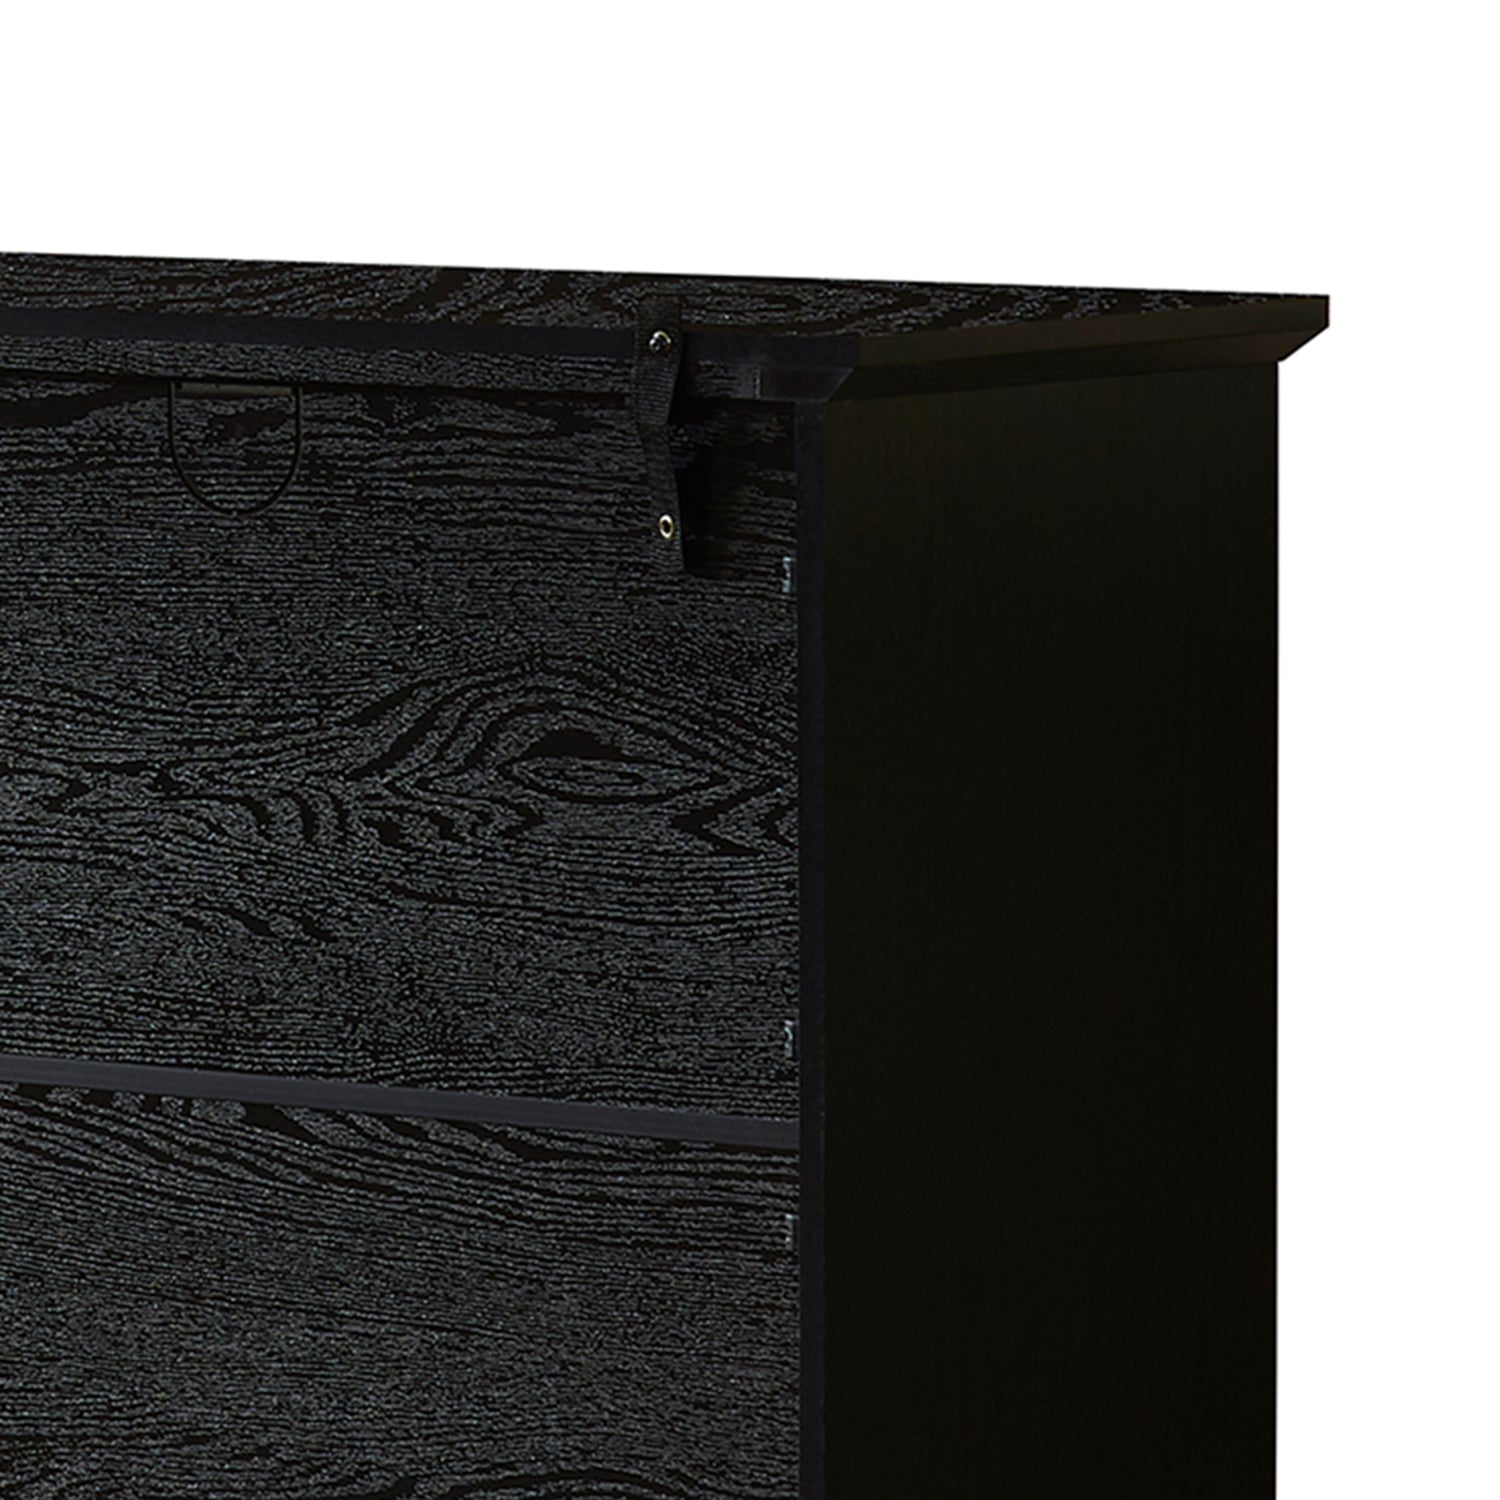 53" TV Console Storage Buffet Cabinet Sideboard, Black black-dining room-adjustabel shelves-mdf+glass